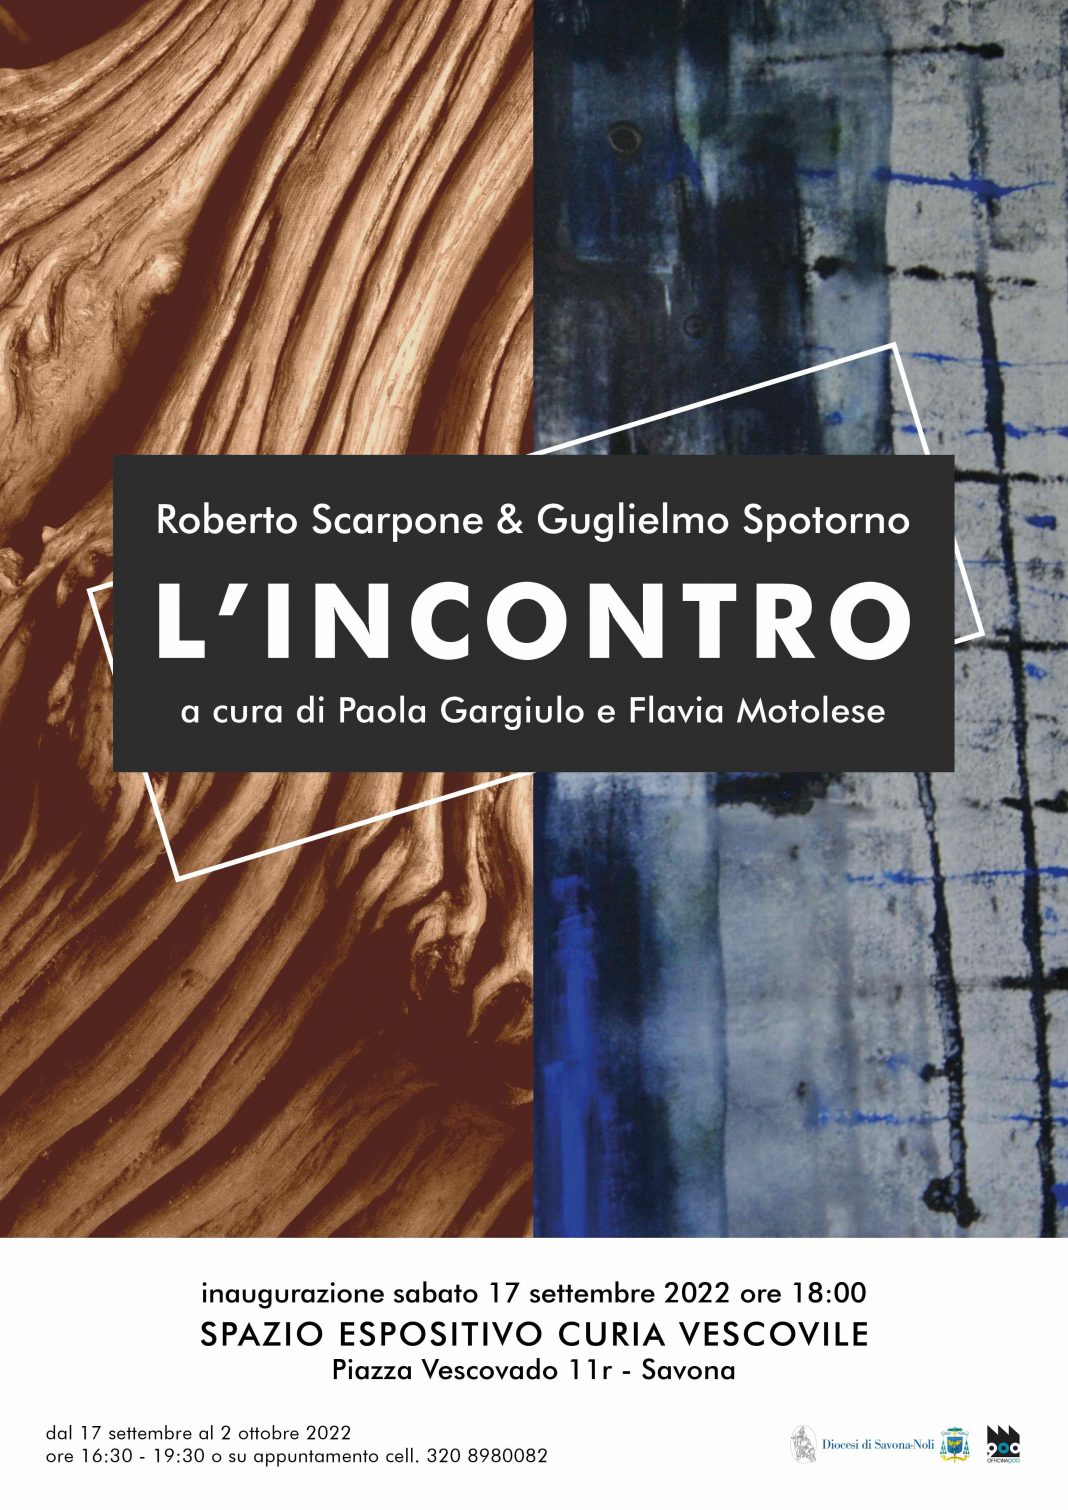 Roberto Scarpone / Guglielmo Spotorno – L’incontrohttps://www.exibart.com/repository/media/formidable/11/img/059/Locandina_Lincontro-1068x1510.jpg